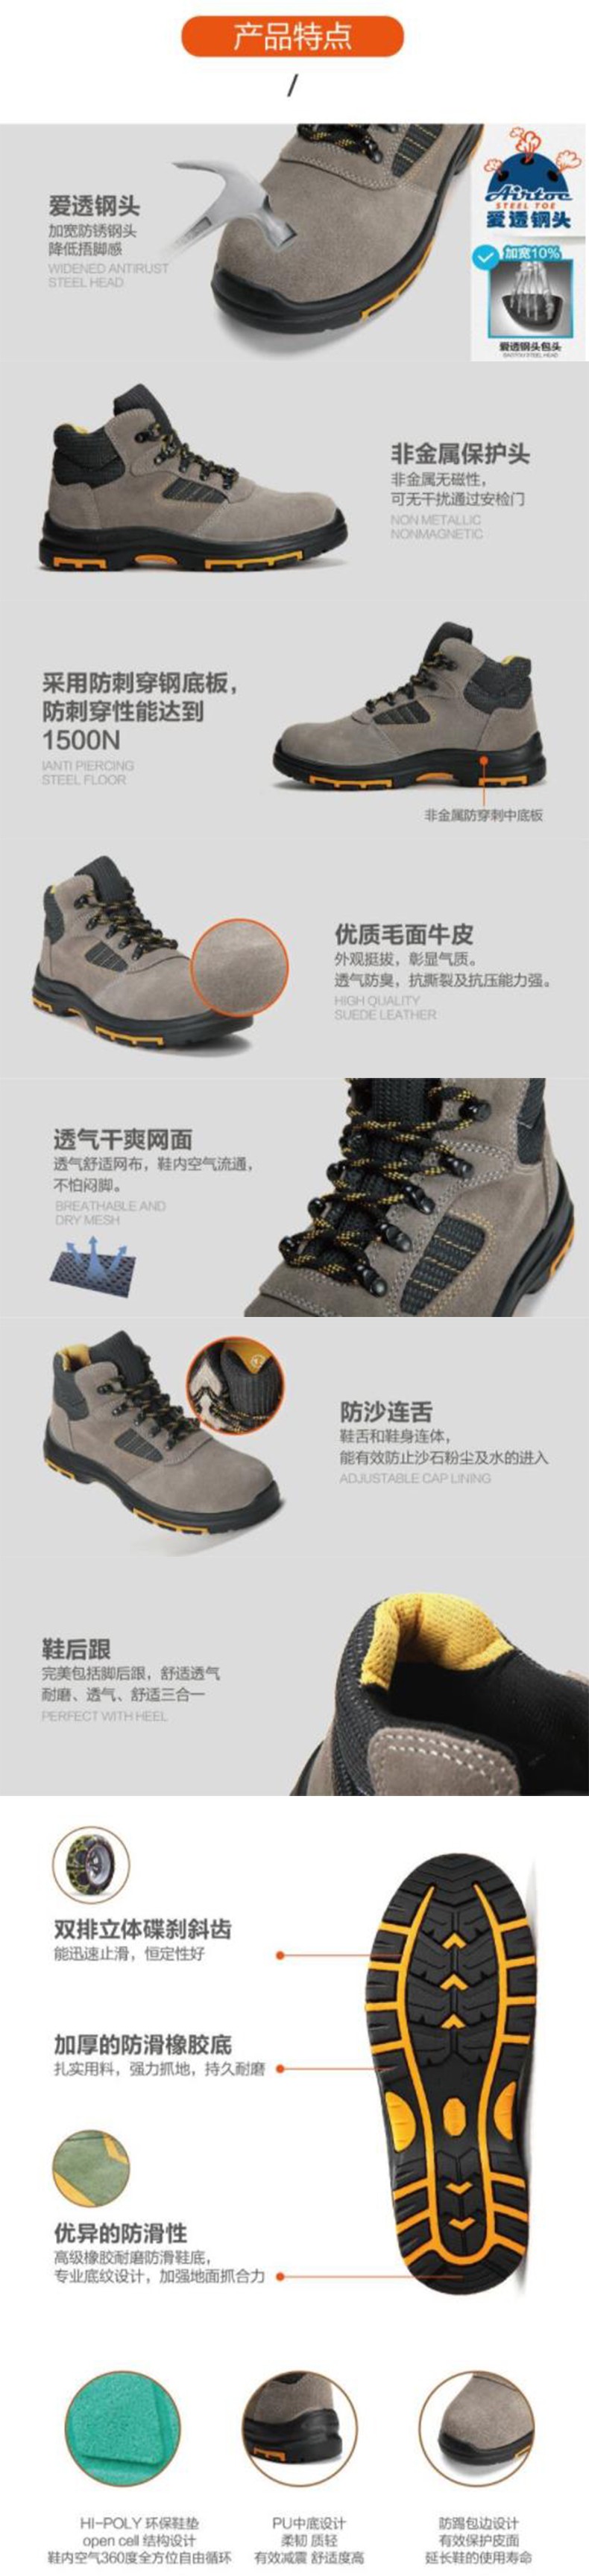 华信吉豹X5低帮橡胶PU安全鞋图片3